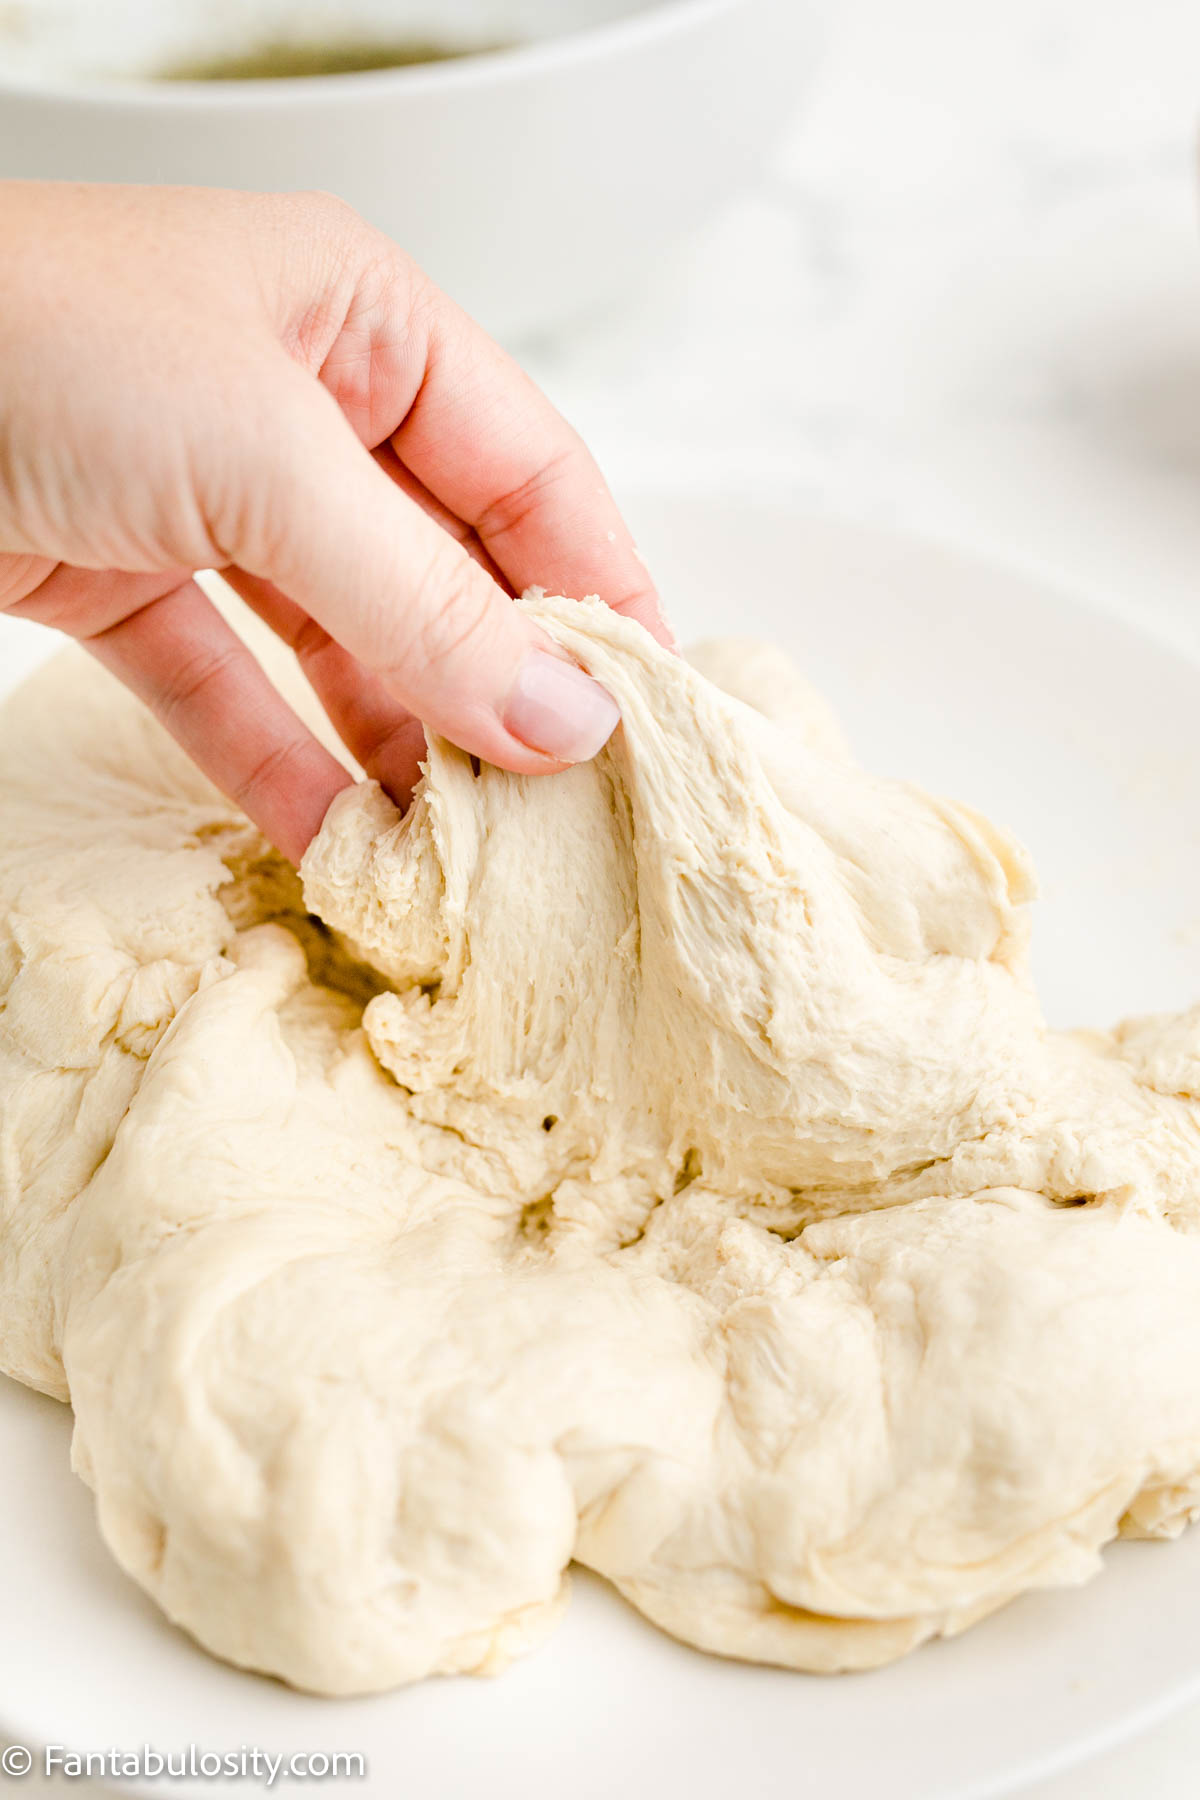 thawed raw bread dough